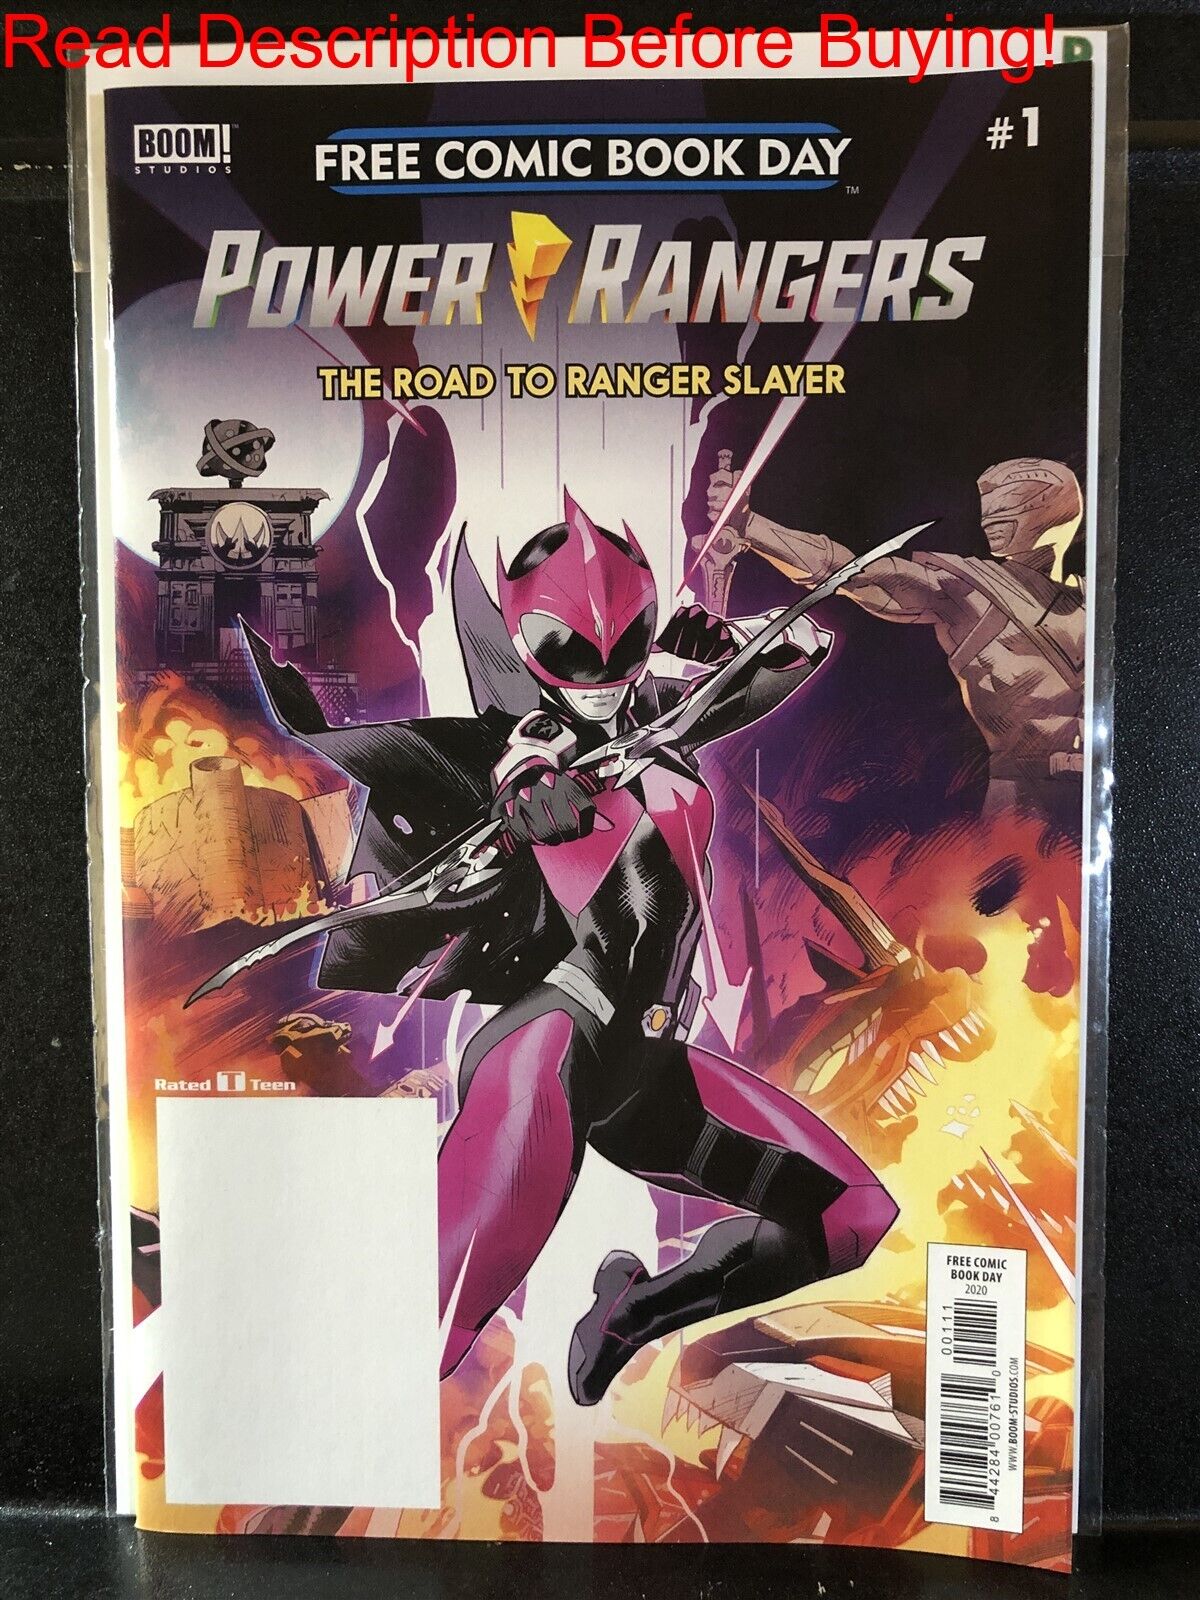 BARGAIN BOOKS ($5 MIN PURCHASE) Power Rangers Road to Ranger Slayer FCBD 2020